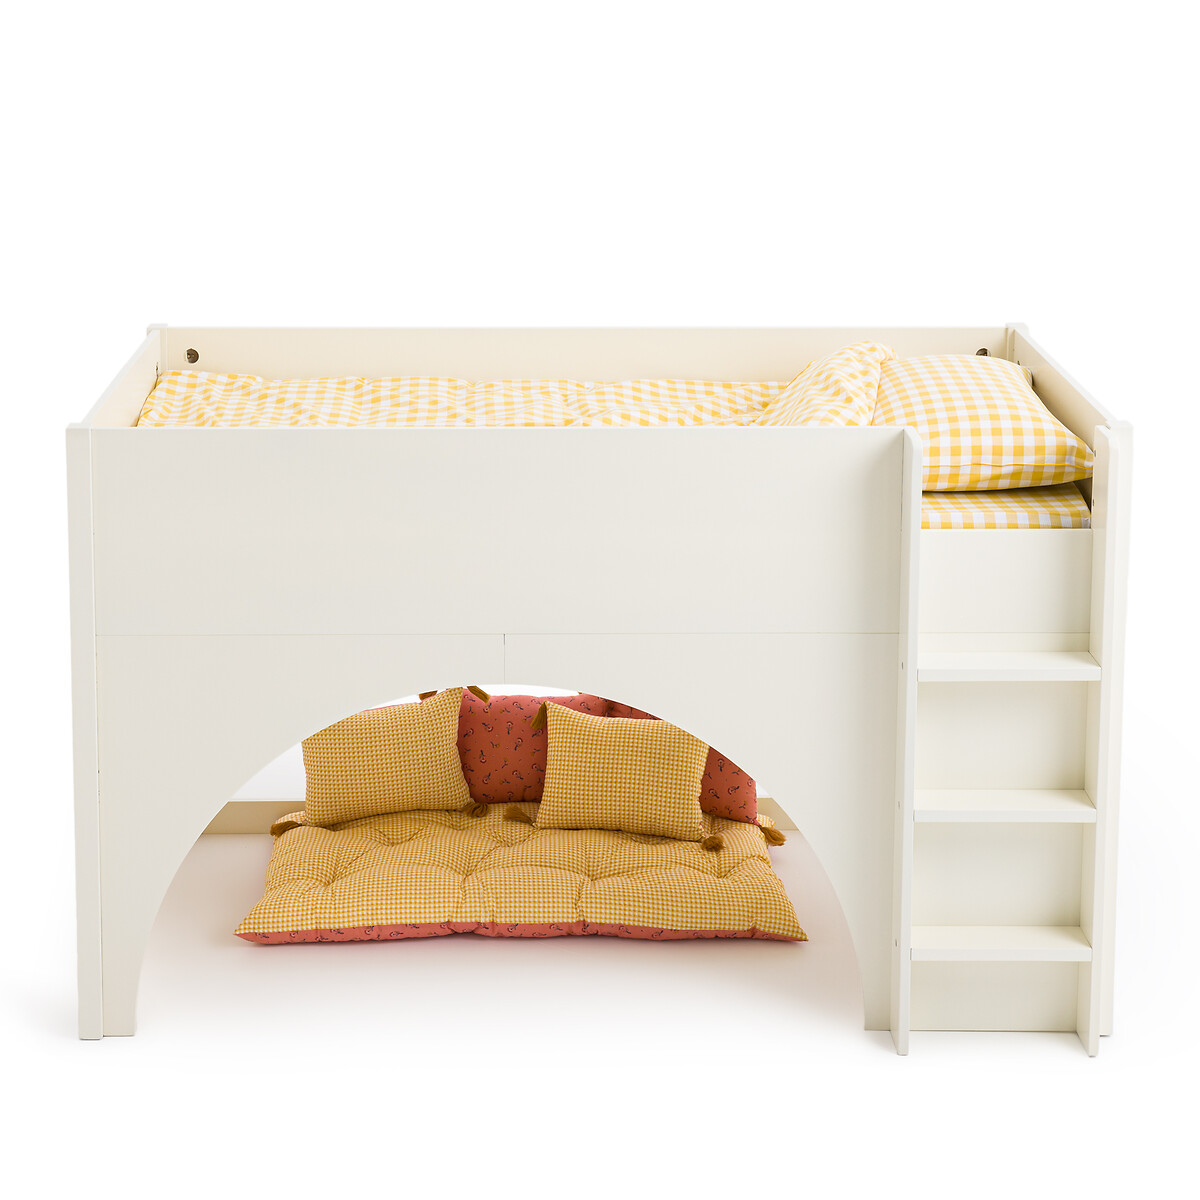 Кровать средней высоты детская Arch 90 x 190 см белый кровать средней высоты roxana 90 x 190 см каштановый